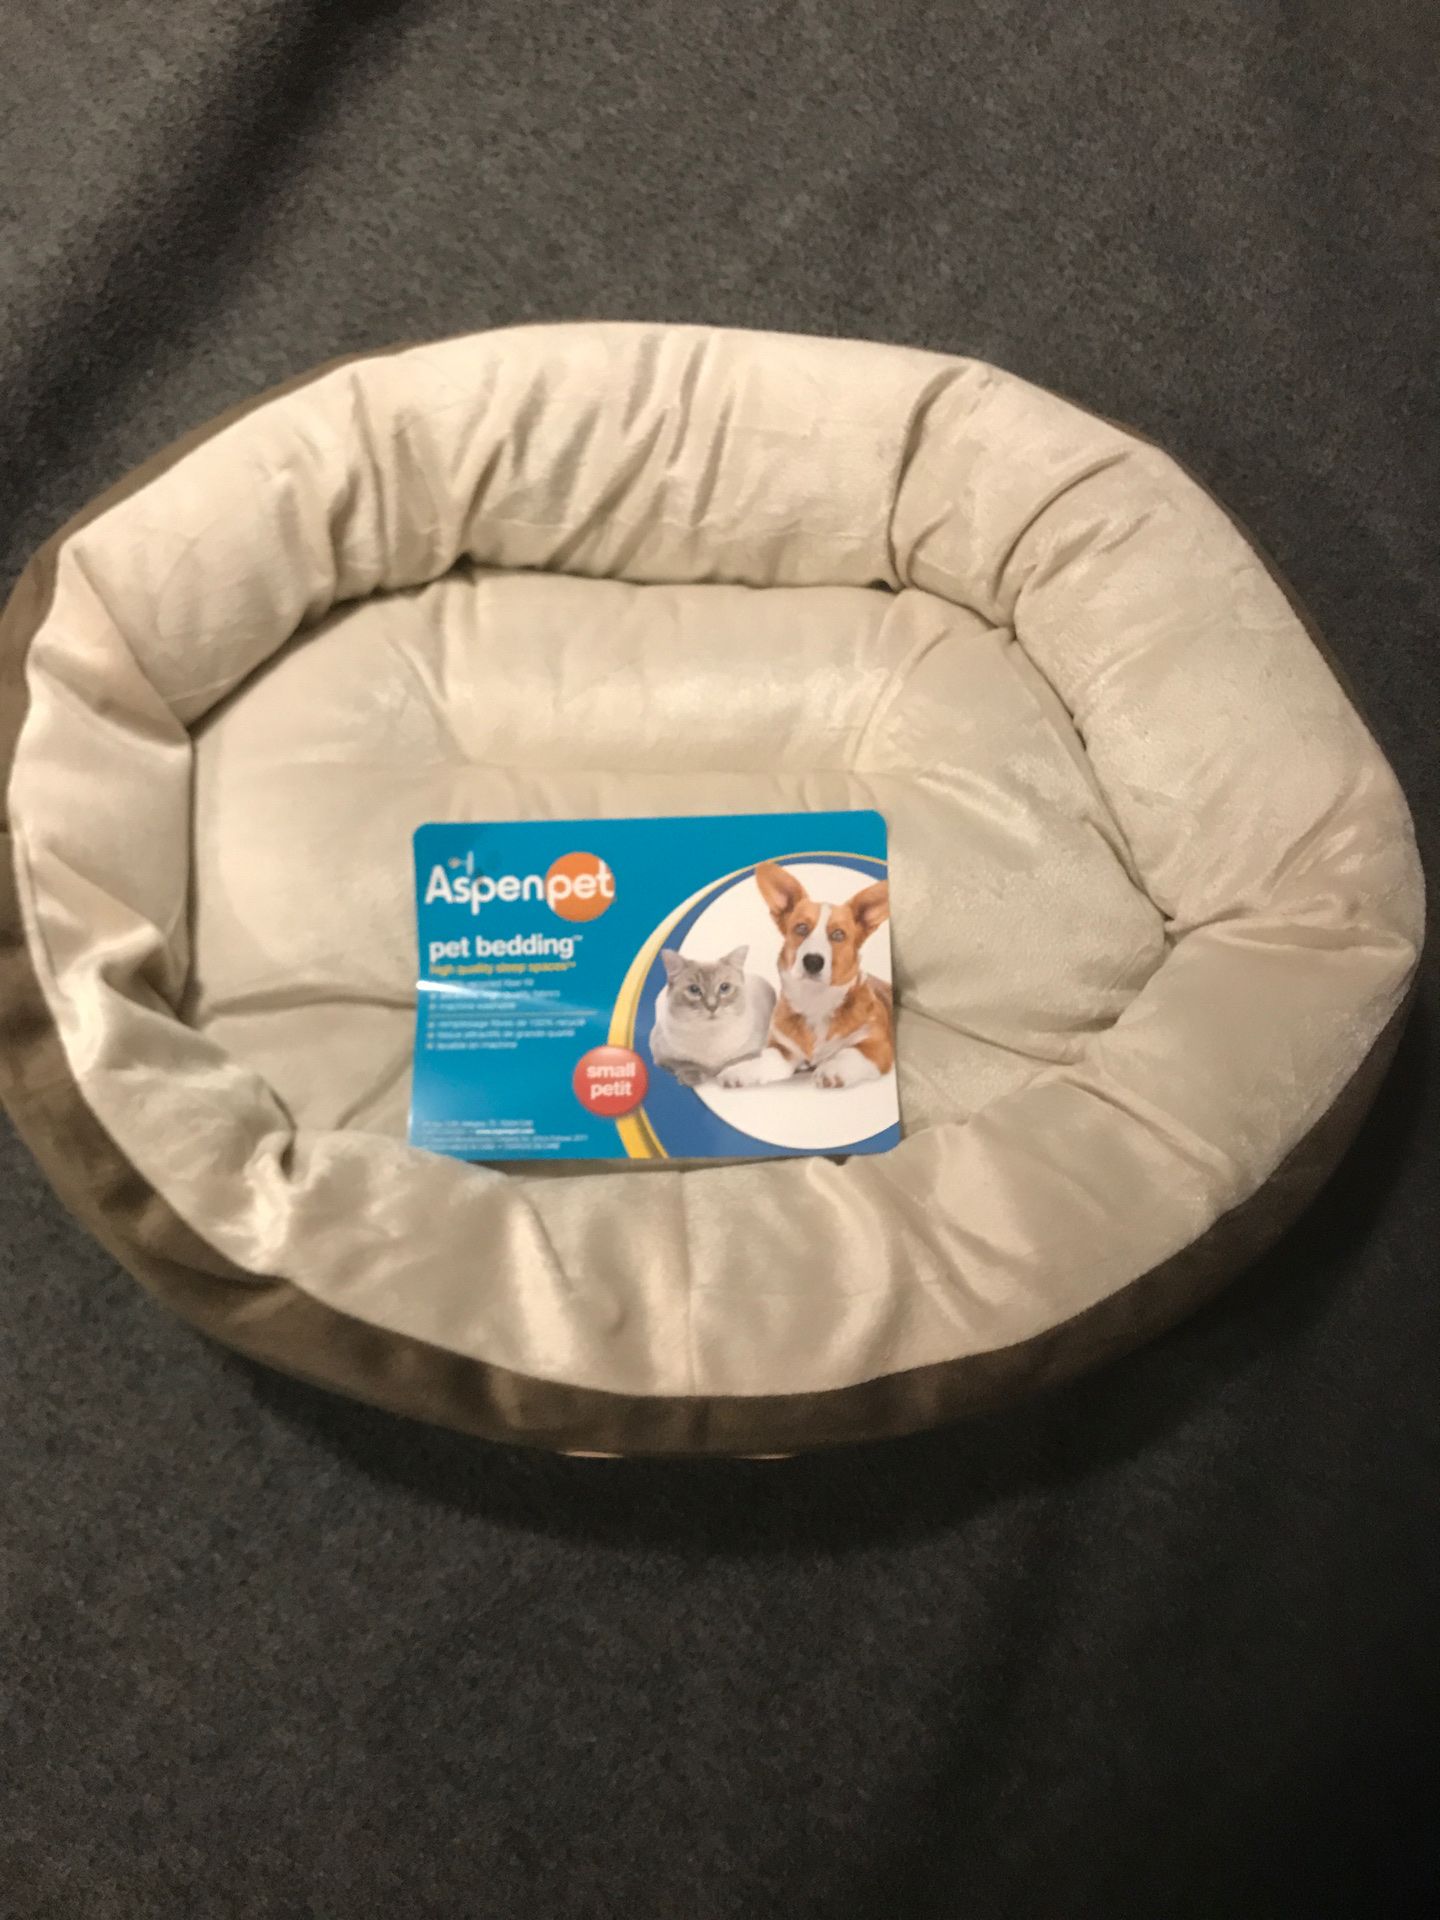 Brand new Aspenpet pet bedding small/petit size